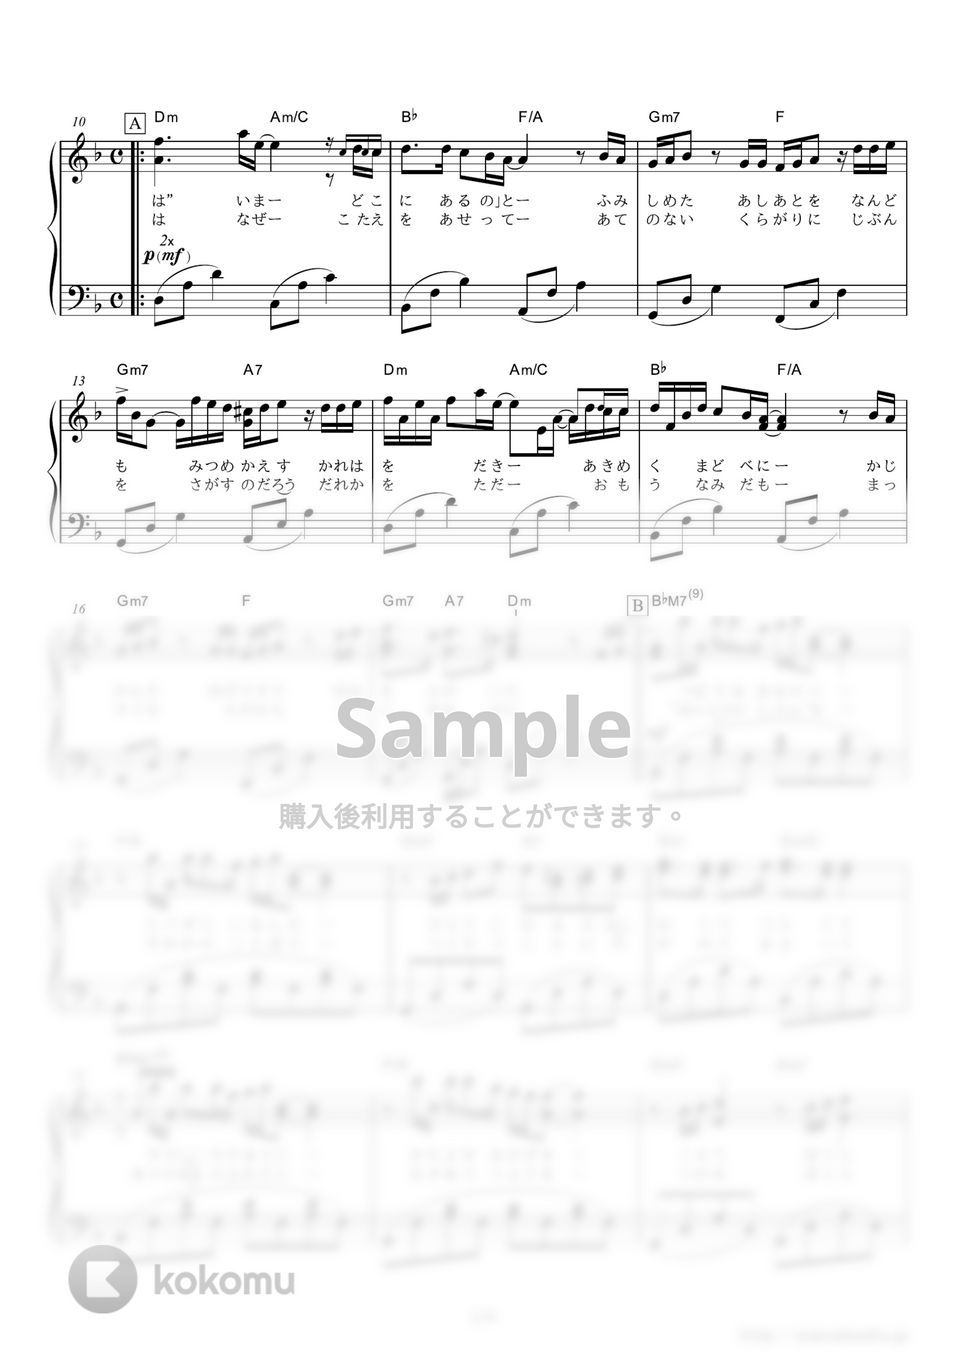 いきものがかり - YELL (第76回NHK全国学校音楽コンクール・中学校の部の課題曲) by ピアノの本棚